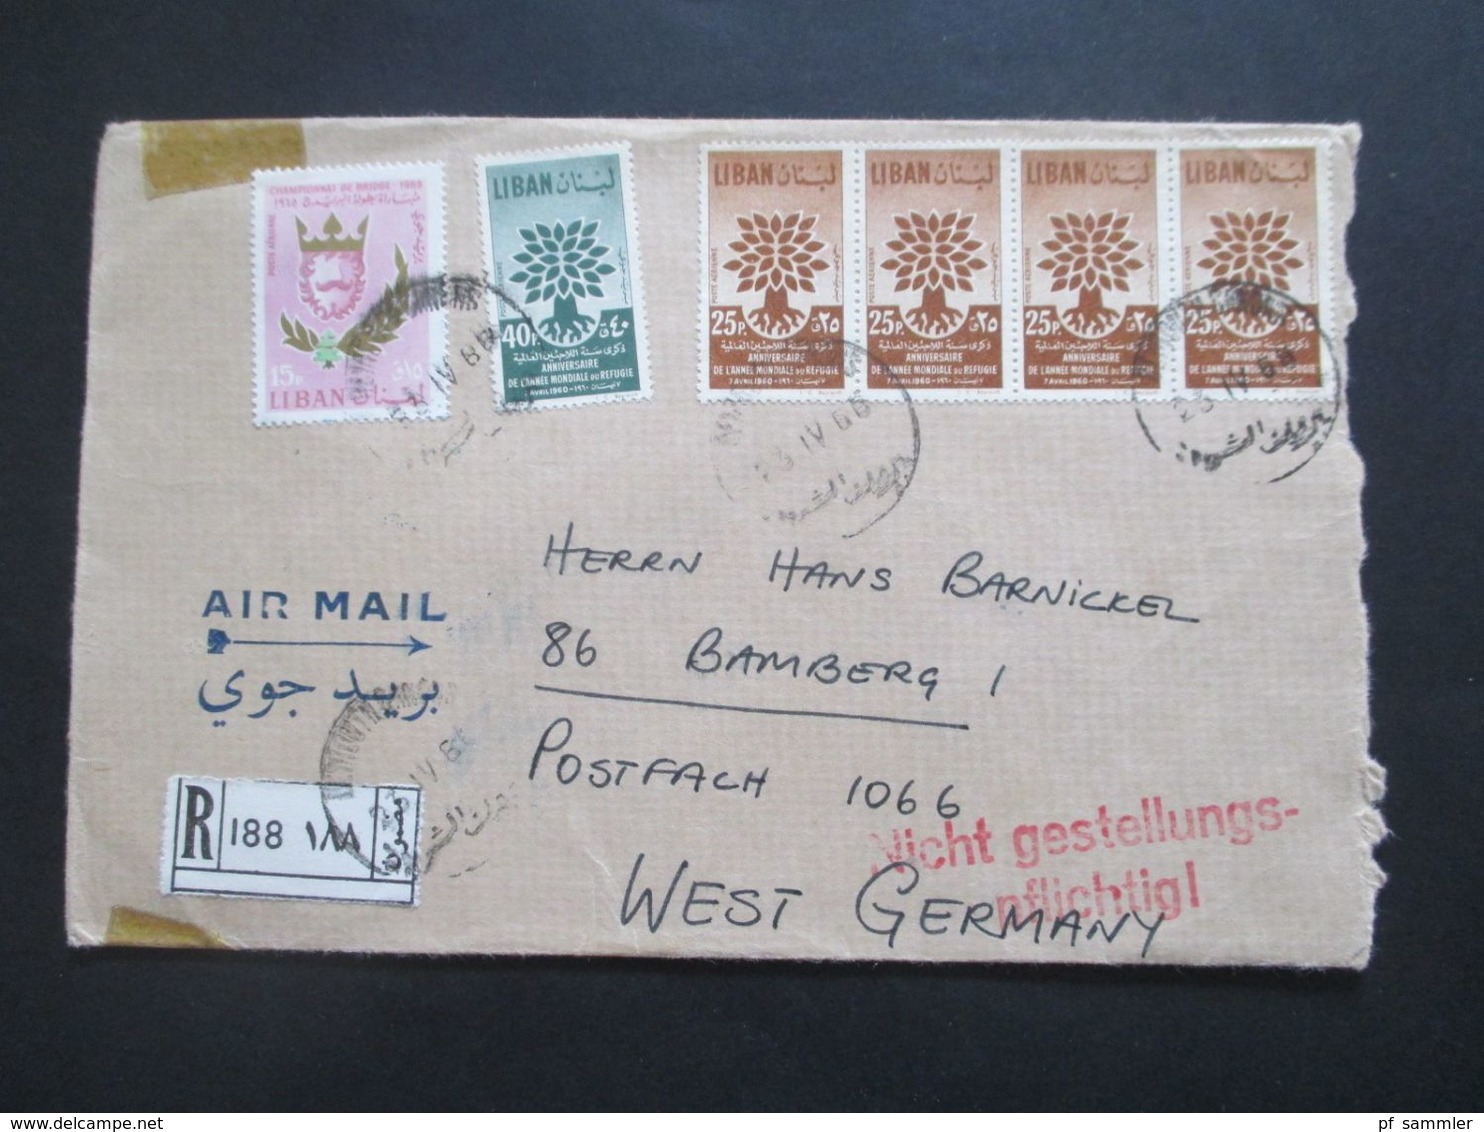 Libanon 1966 Einschreiben Air Mail / Luftpost Roter Stempel L2 Nicht Gestellungspflichtig! Liban - Lebanon